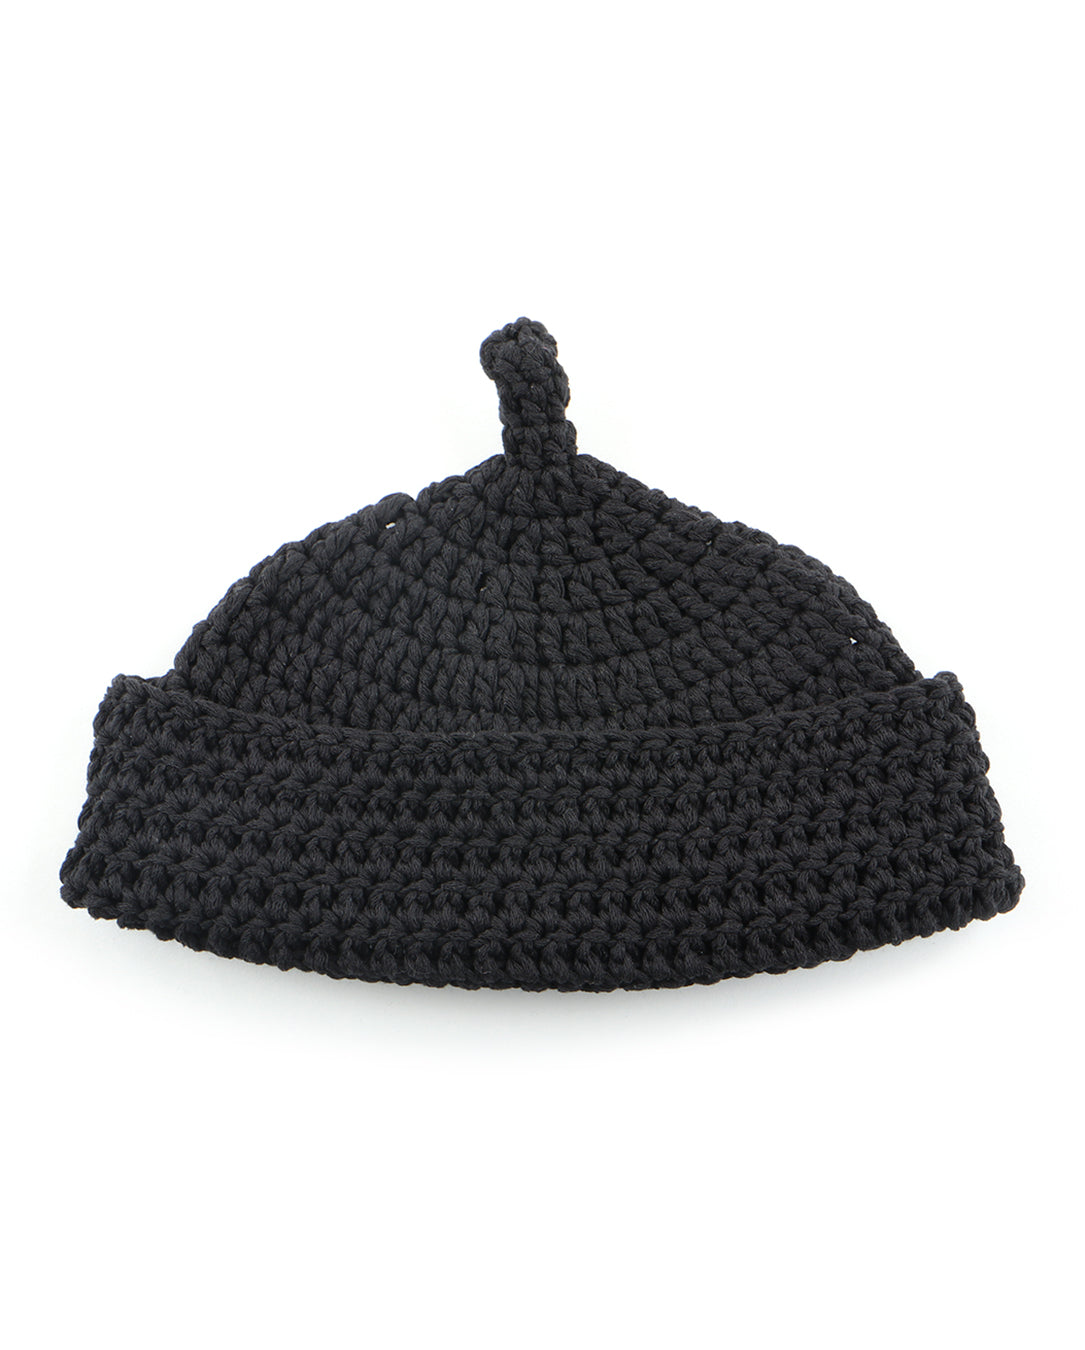 24224 Crocheted Beanie black – LOVE nagoya